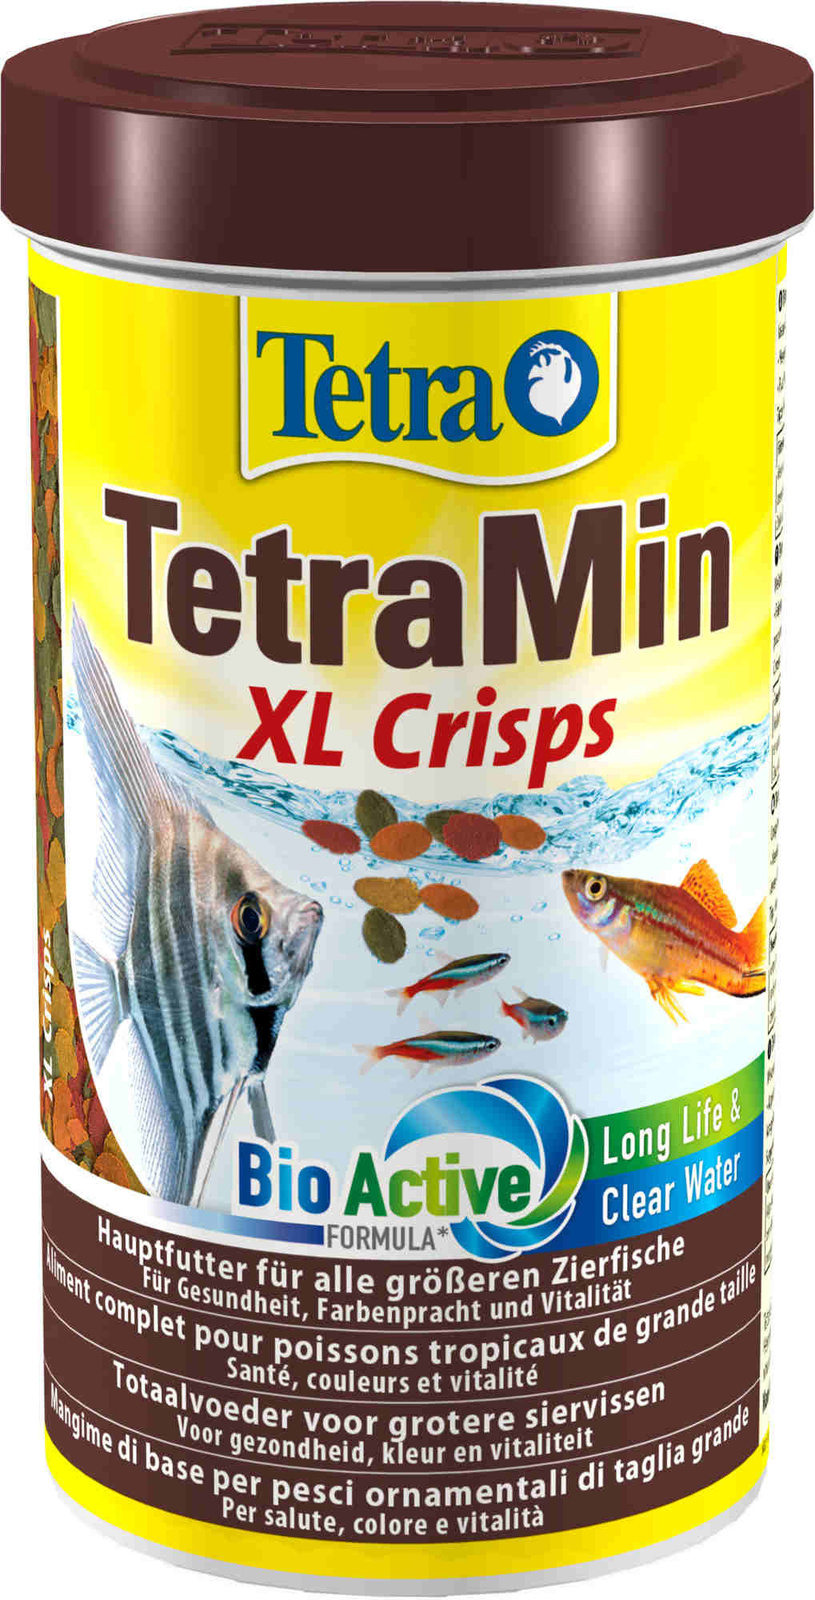 Tetra (корма) Tetra (корма) корм для всех видов крупных рыб, крупные чипсы (100 г) tetra корма tetra корма корм для всех видов рыб чипсы 250 мл 20 г